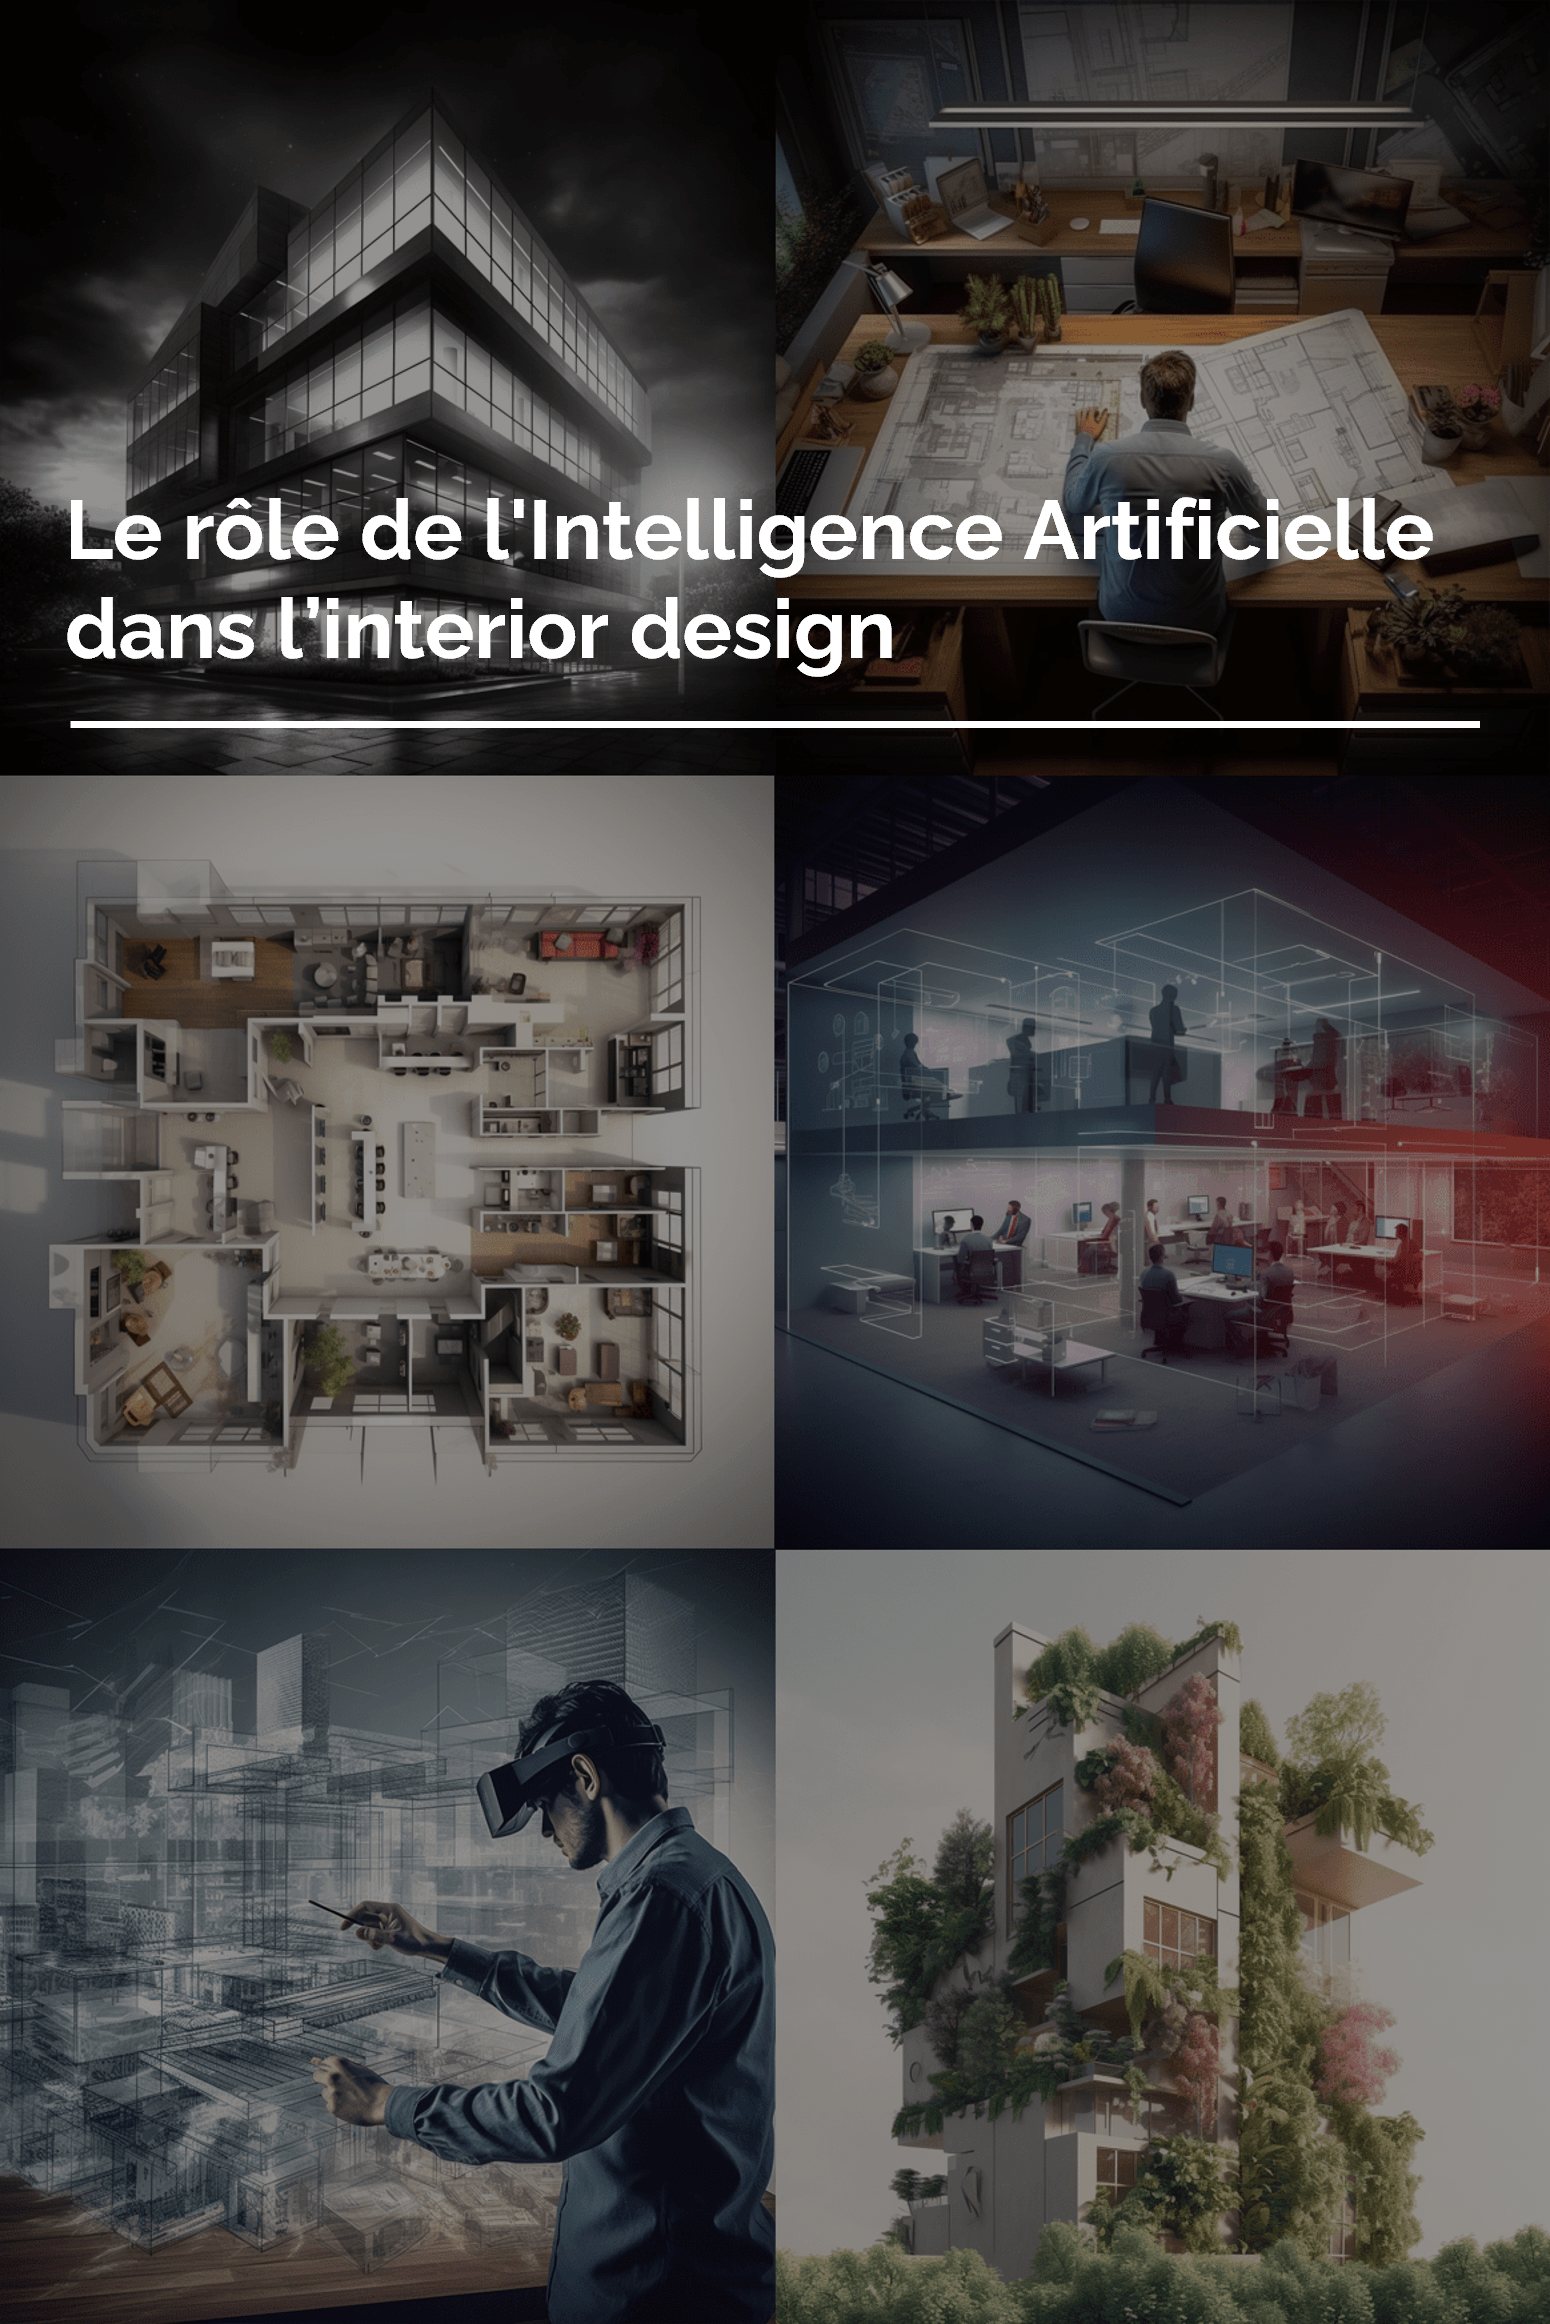 Le rôle de l’Intelligence Artificielle dans l’architecture et le design